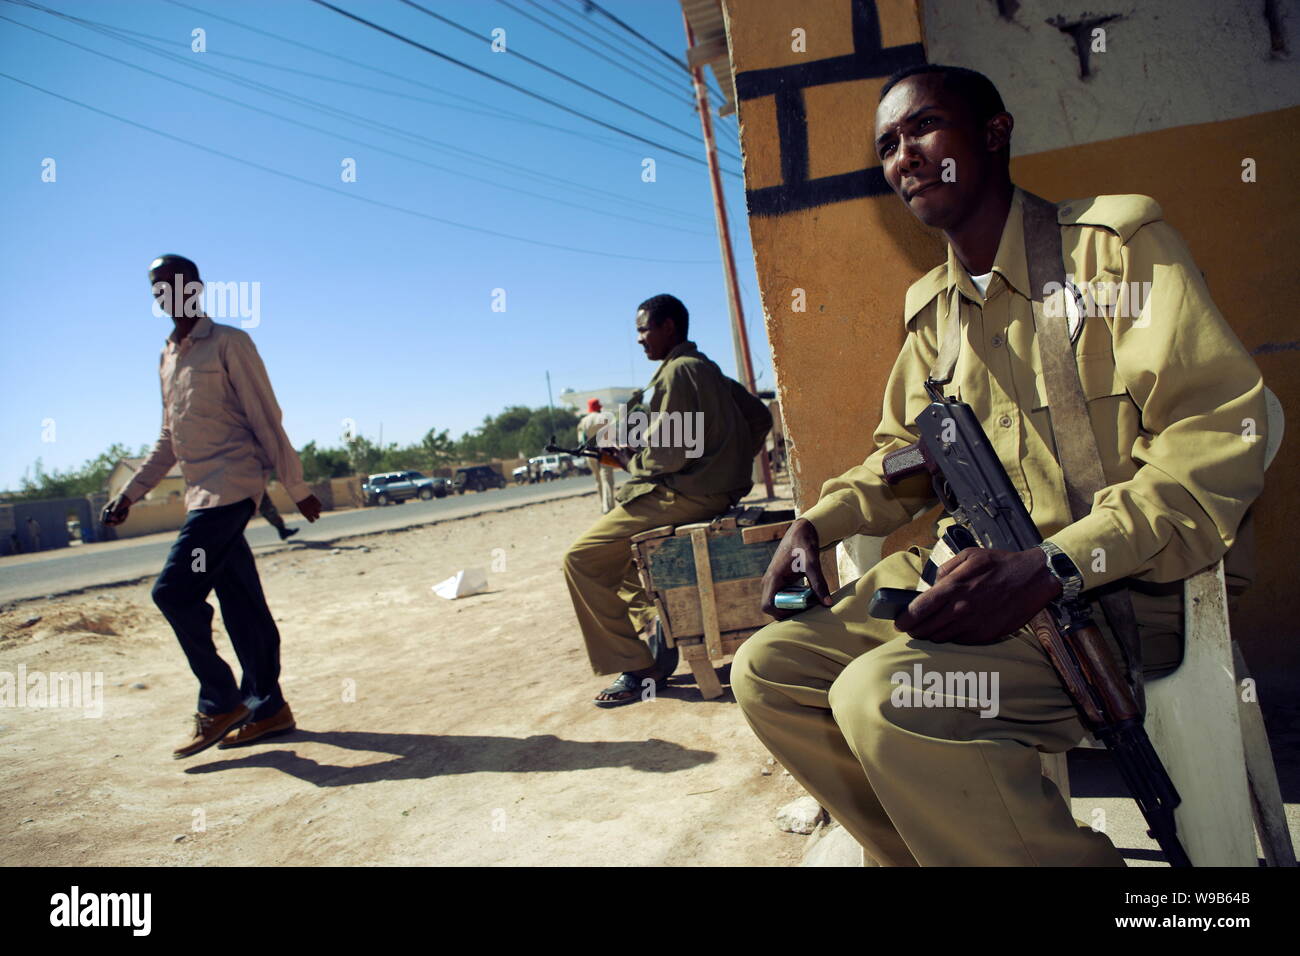 Armati di mercenari somali sono visti in guardia in un cafe a Garowe, Puntland Membro, Somalia, 17 gennaio 2009. Due giovani giornalisti cinesi sono stati inviati a Foto Stock